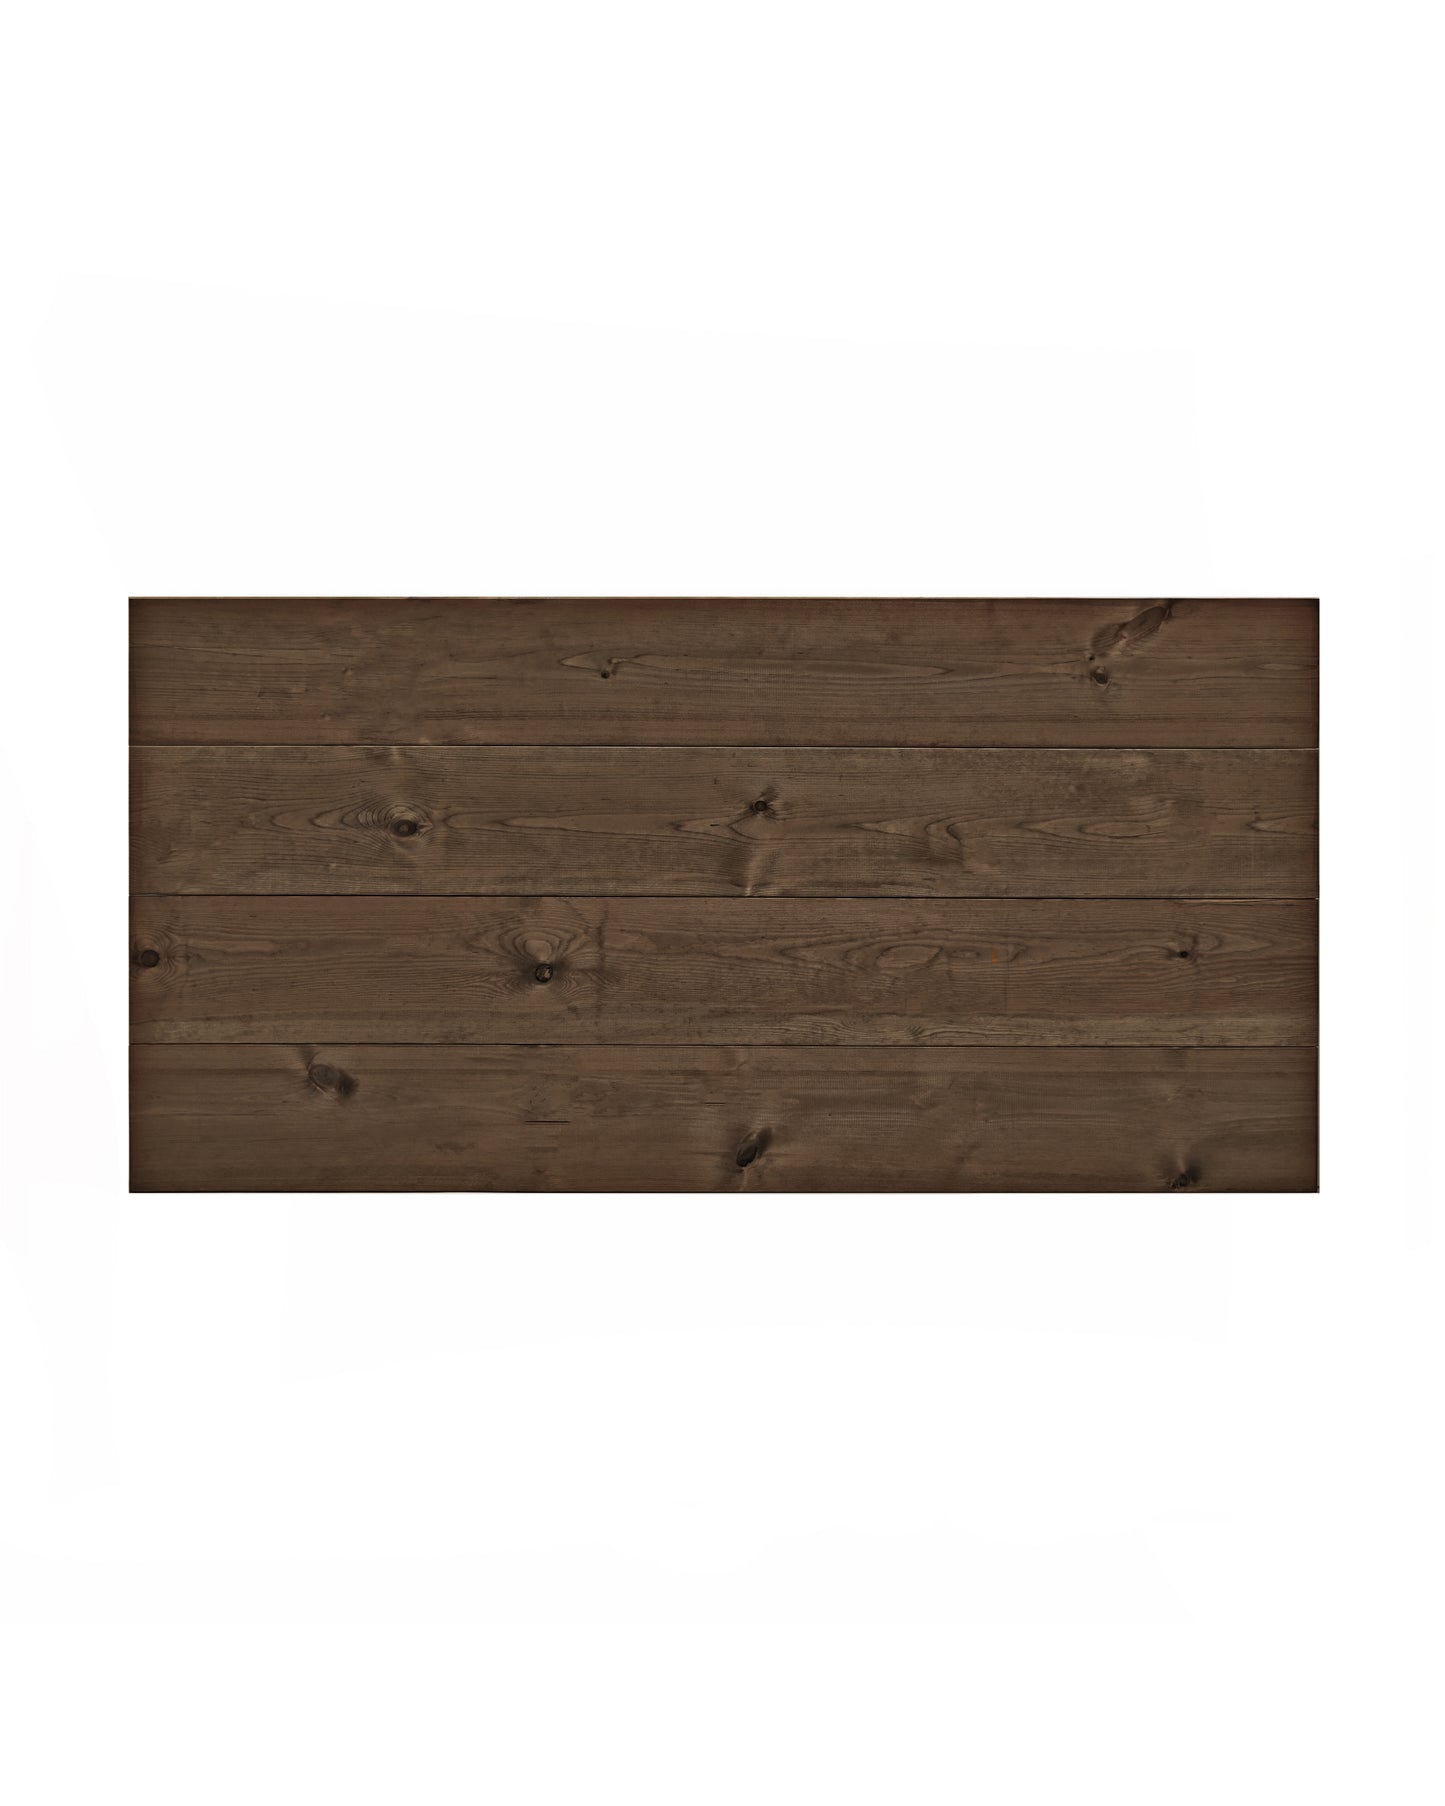 Cabecero de madera maciza en tono roble oscuro de 160x80cm - DECOWOOD